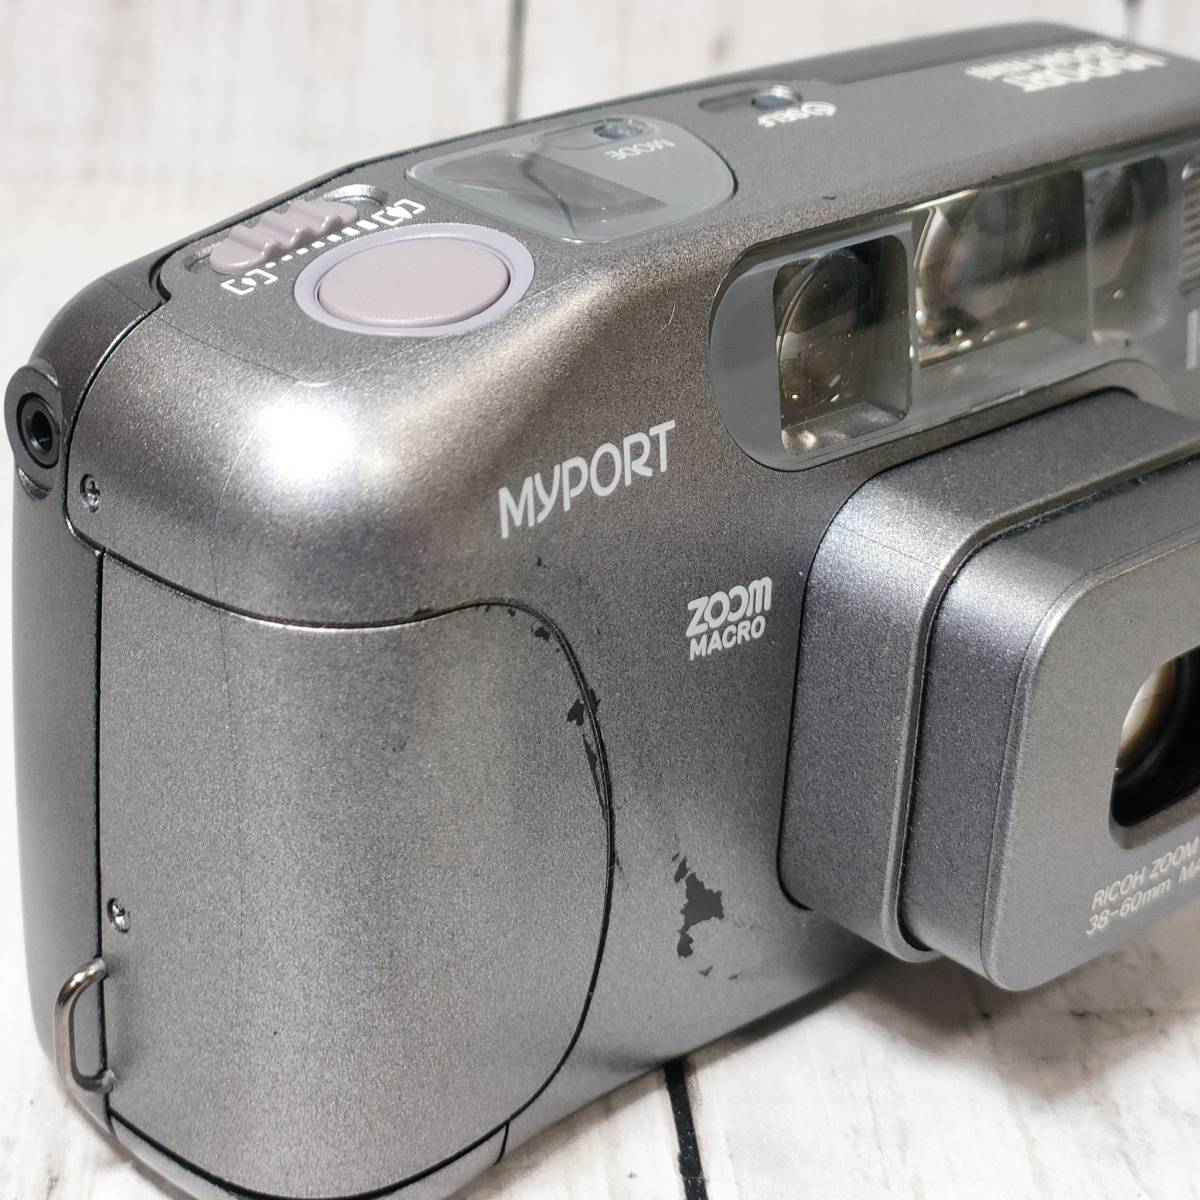 リコー マイポート RICOH MYPORT ZOOM mini フィルムカメラ コンパクトカメラ カメラ ヴィンテージ 【11084_画像4